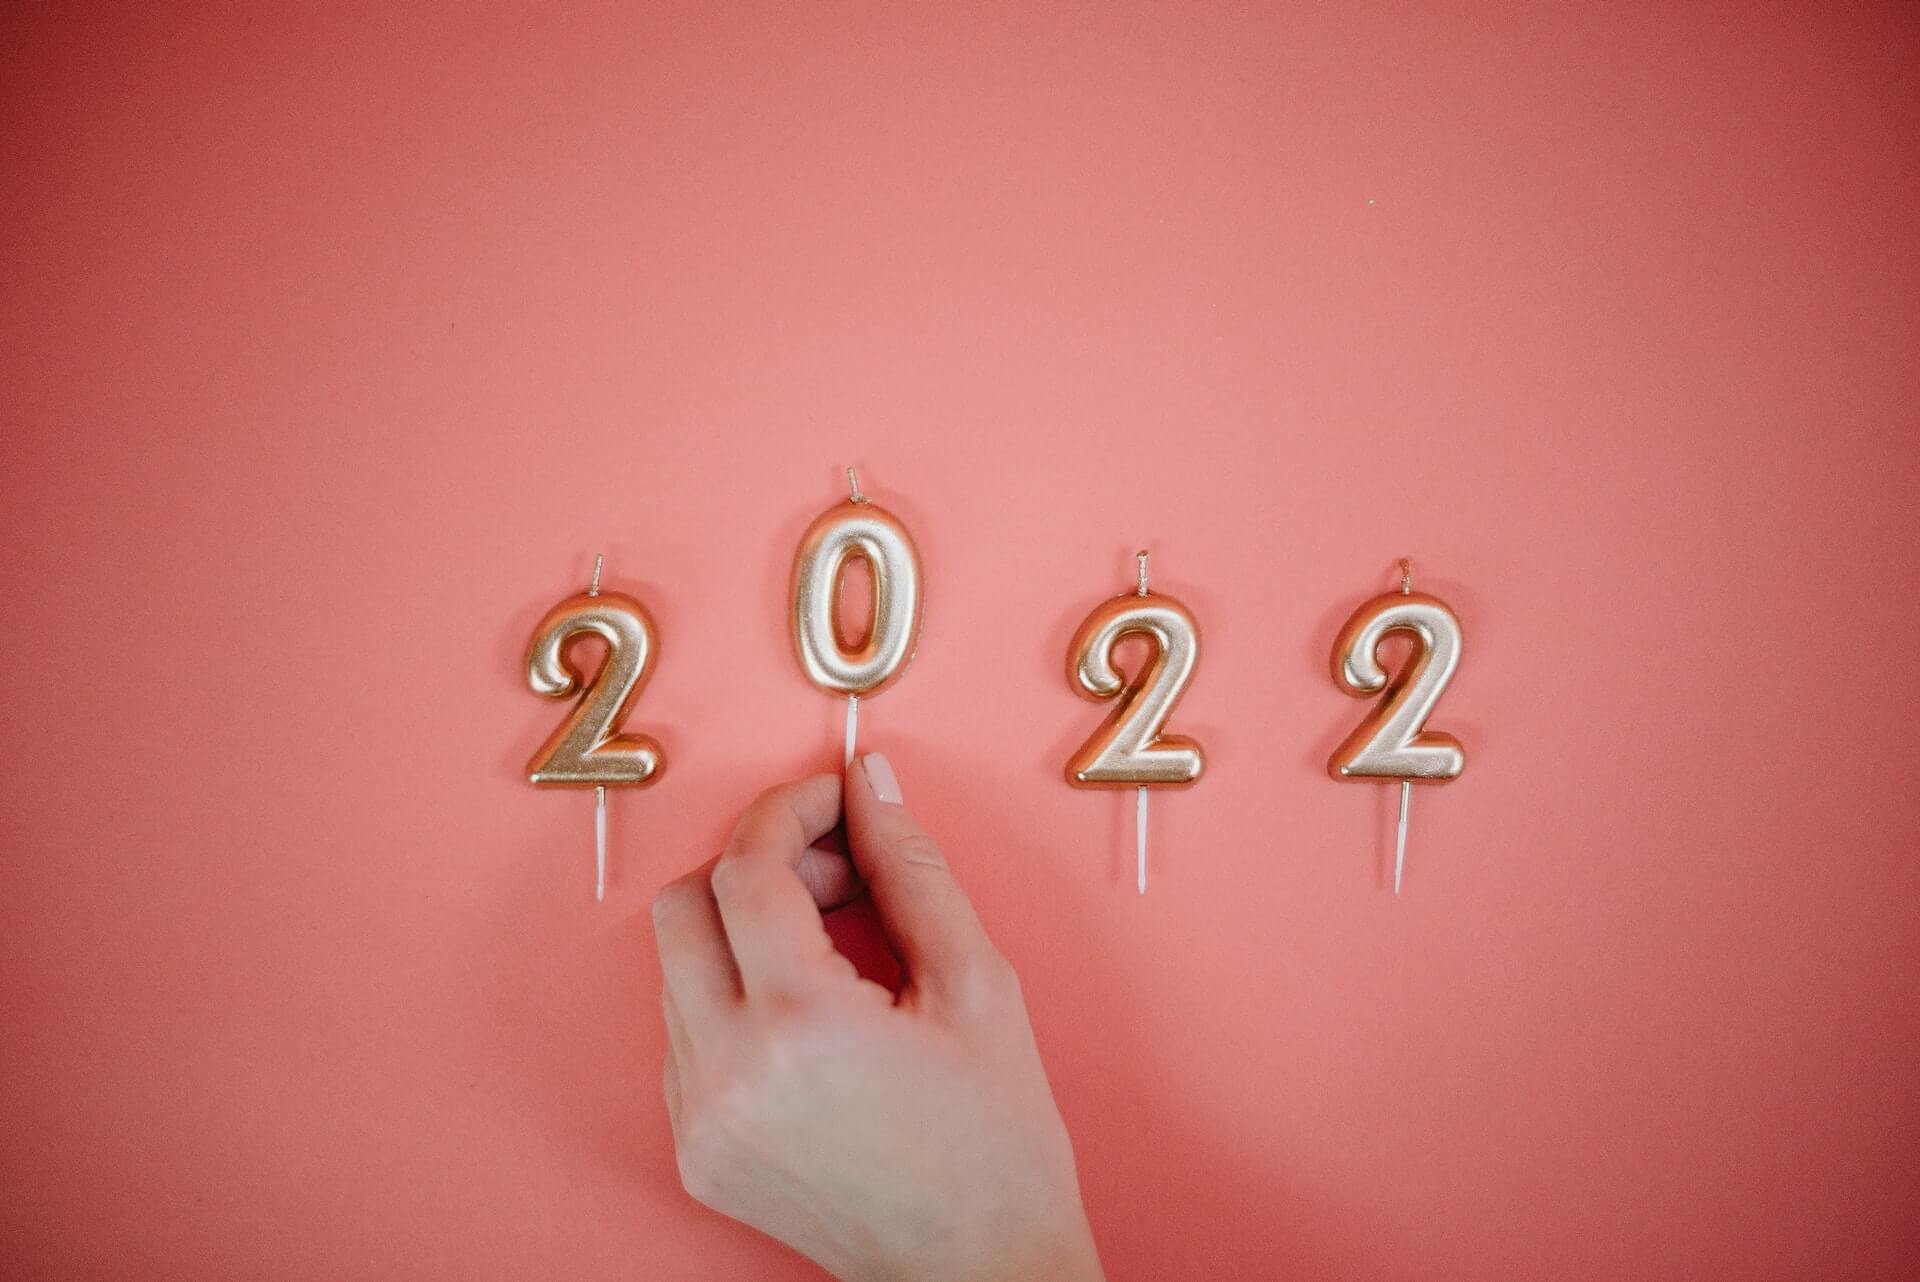 Vorsätze 2022: 25 tolle Vorsätze für das neue Jahr